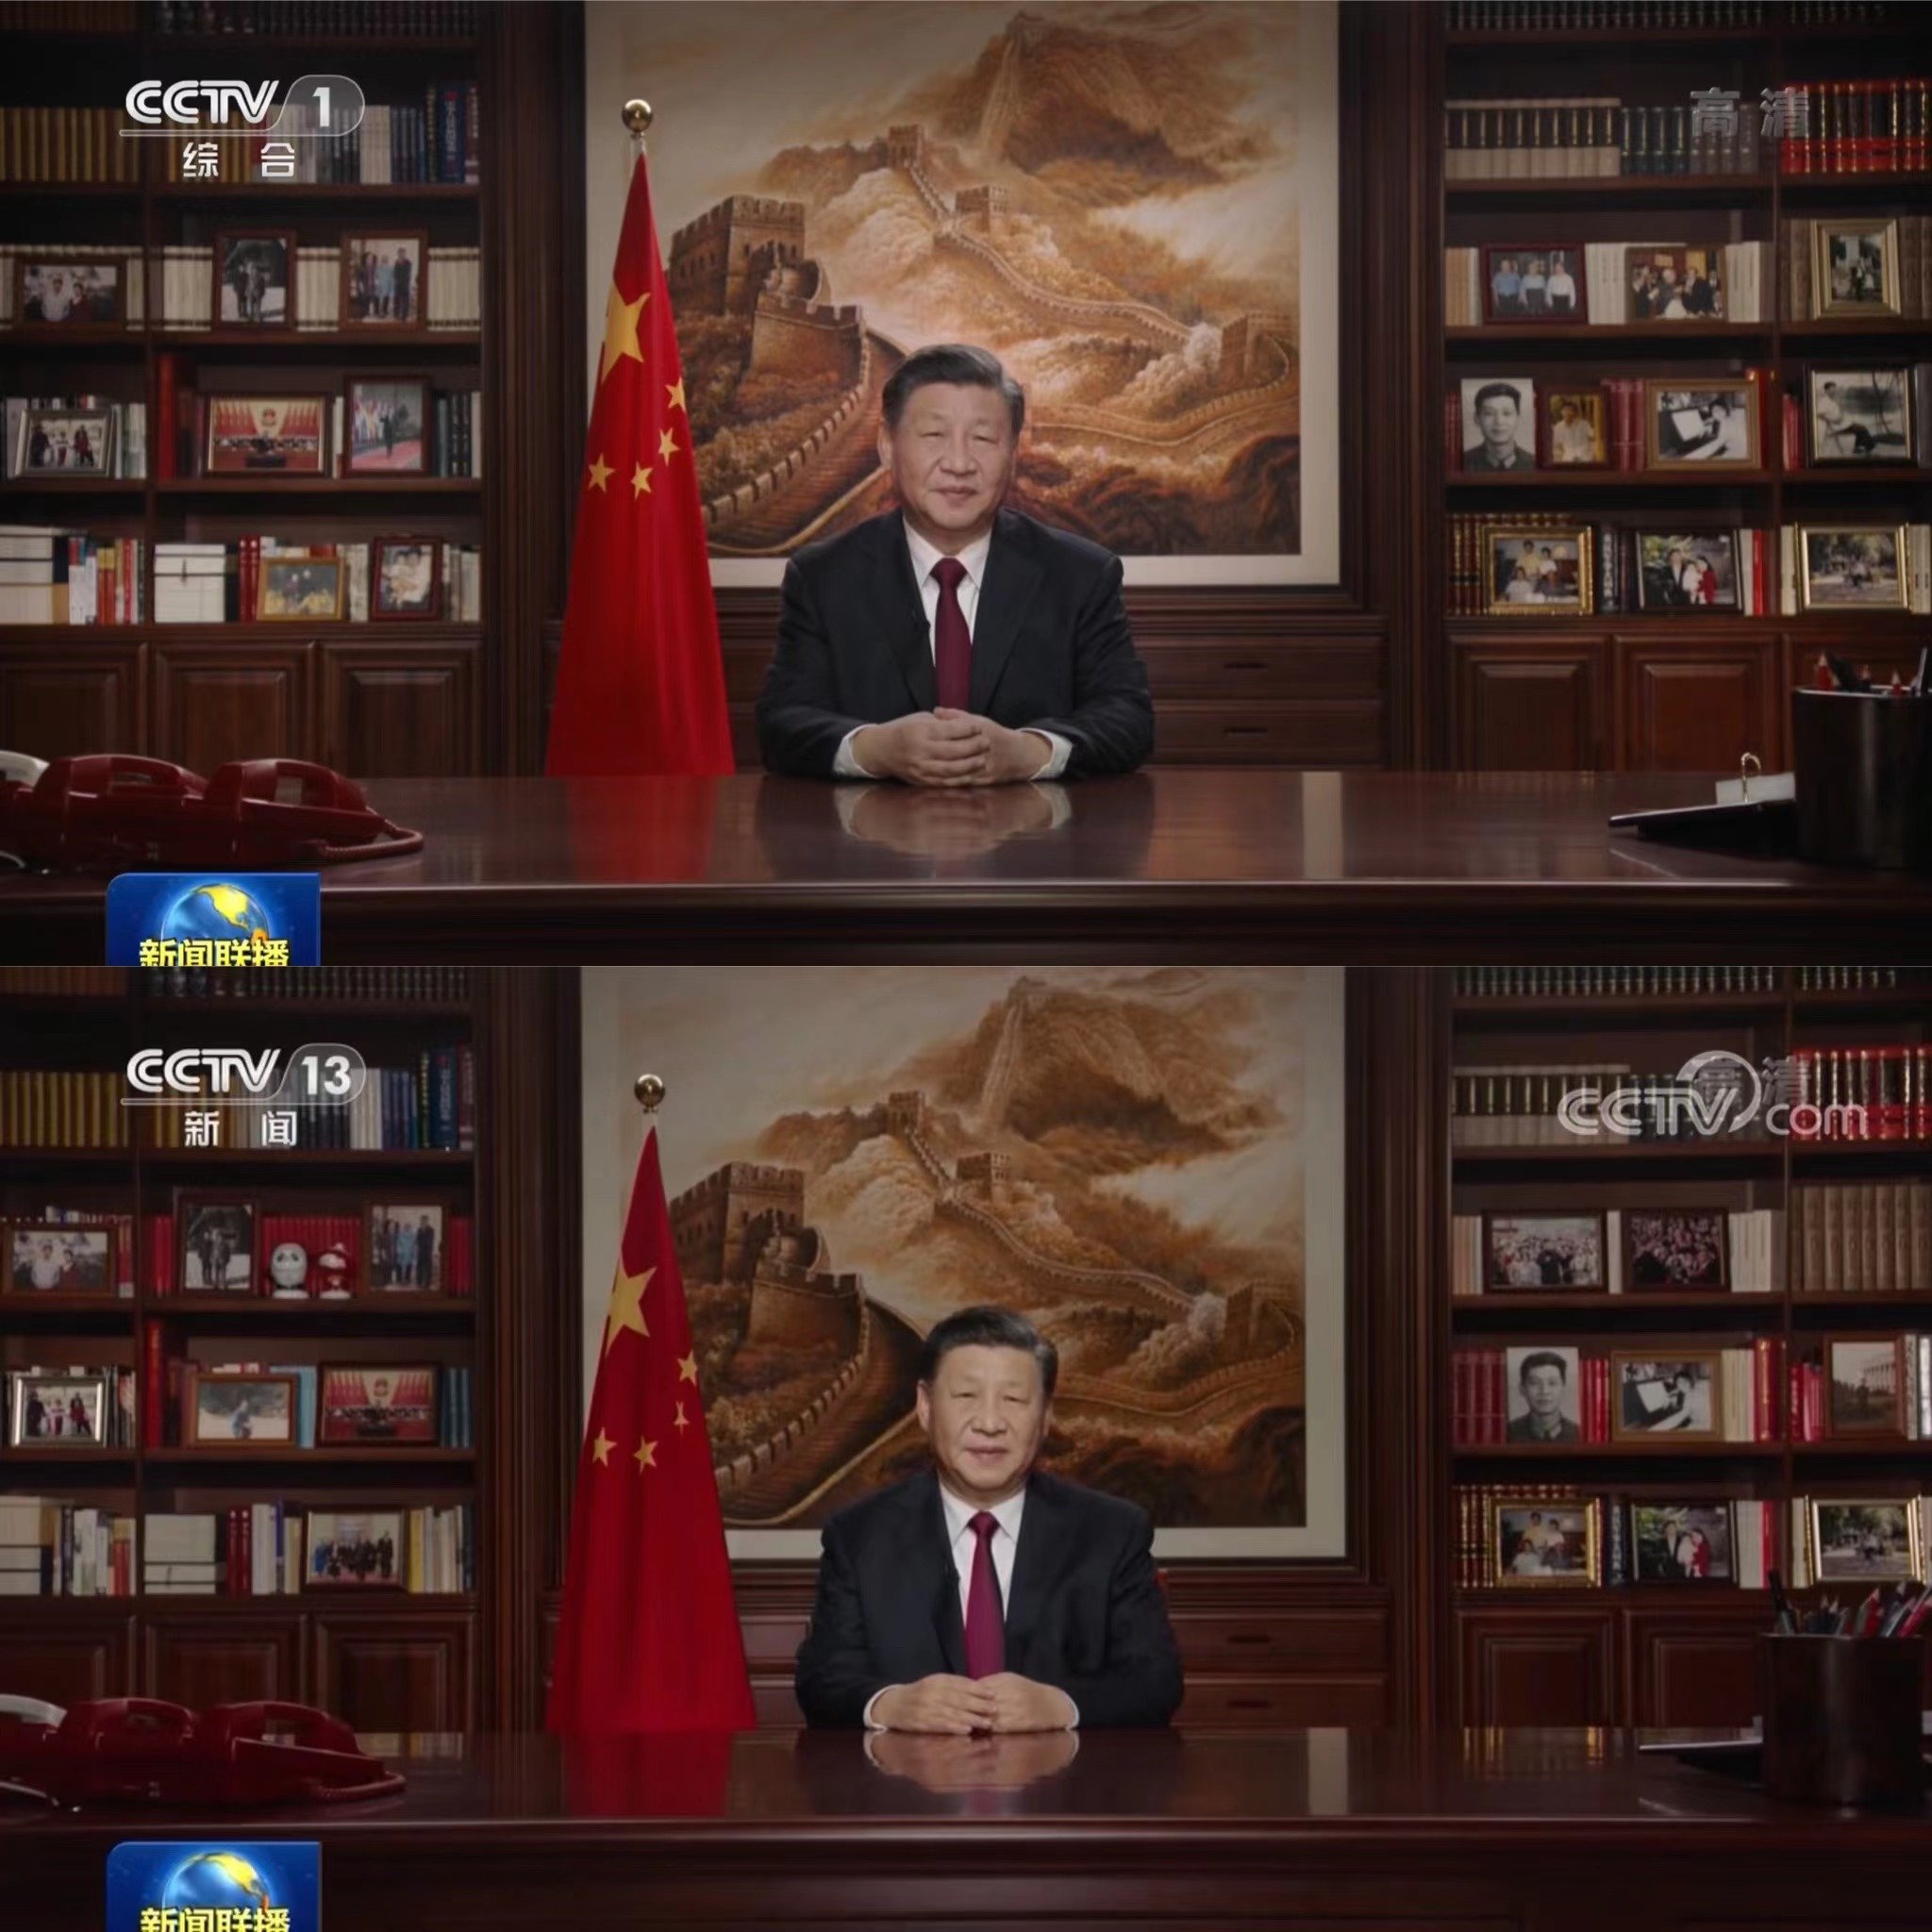 2022년 신년사와 2023년 신년사를 발표하는 시진핑 주석의 집무실 배경 사진. CC-TV 캡쳐